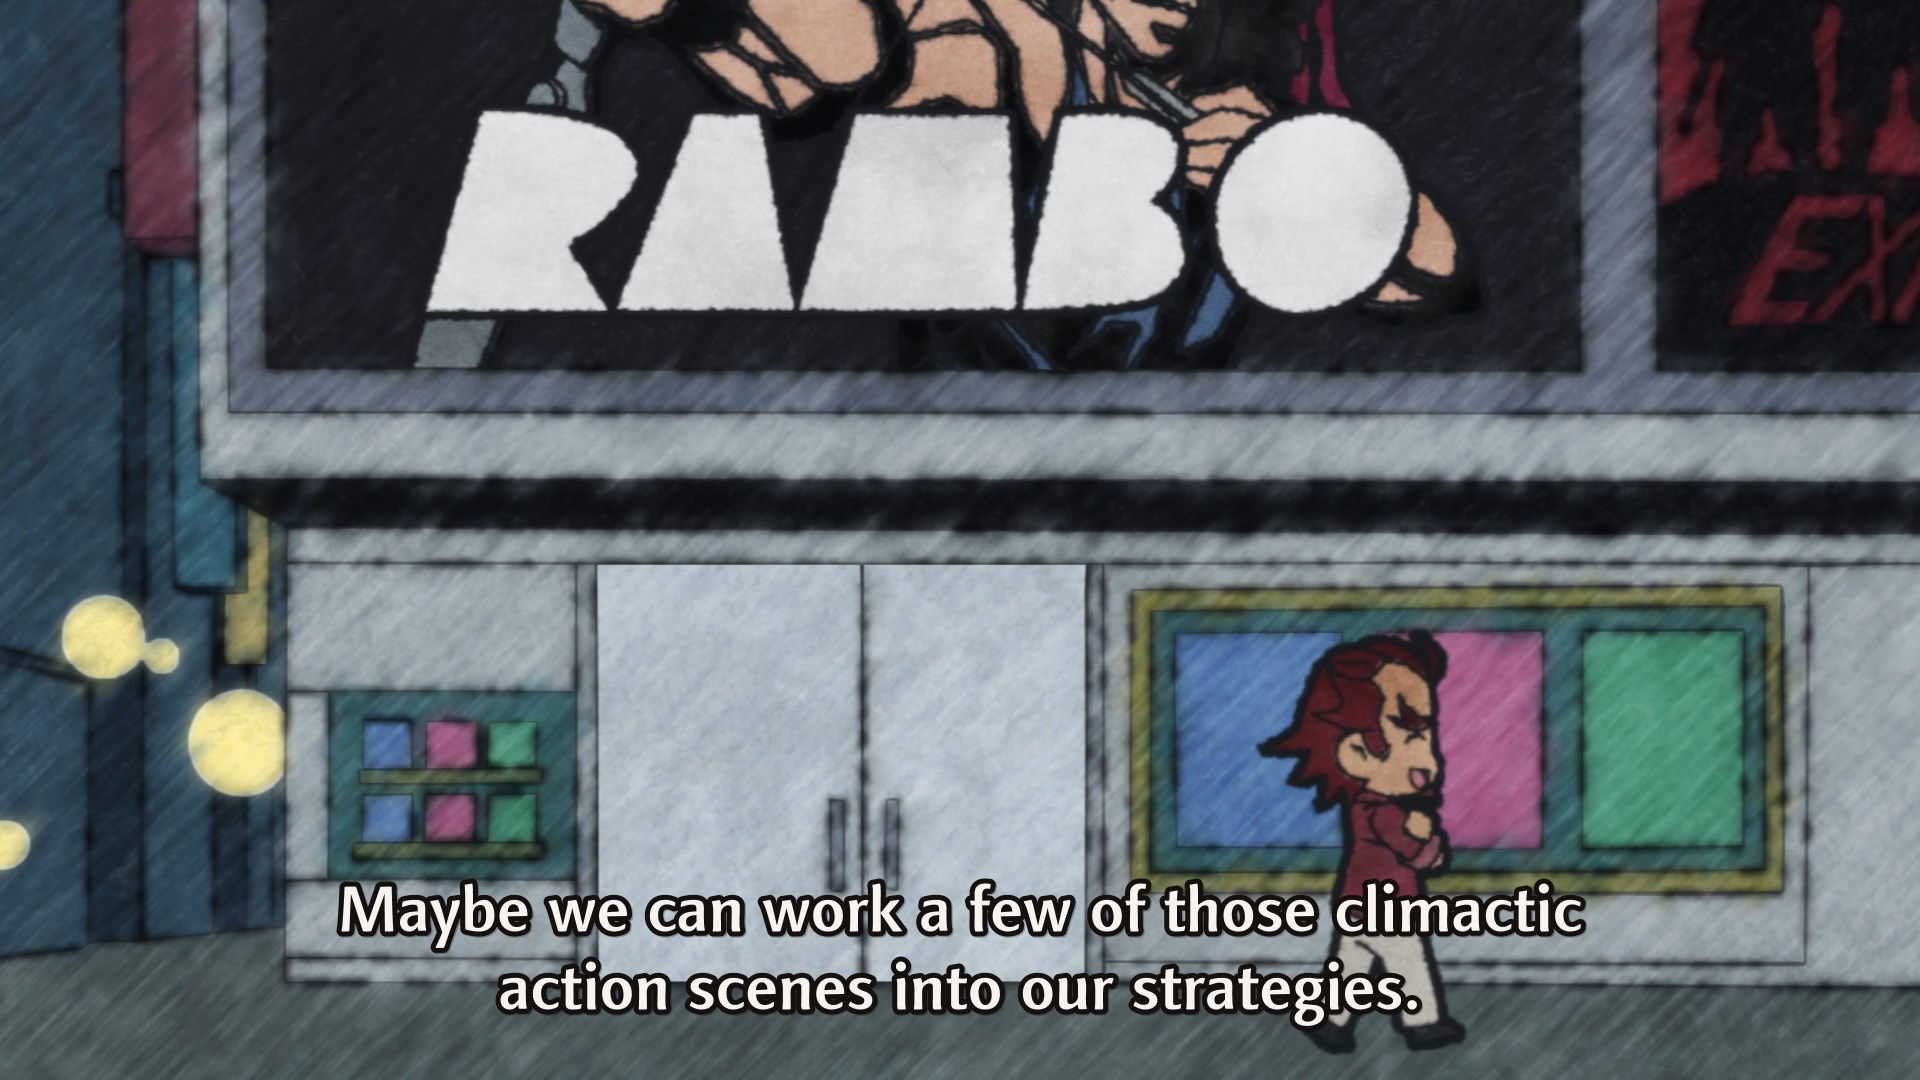 Genjuuro plans strategy by watching Rambo